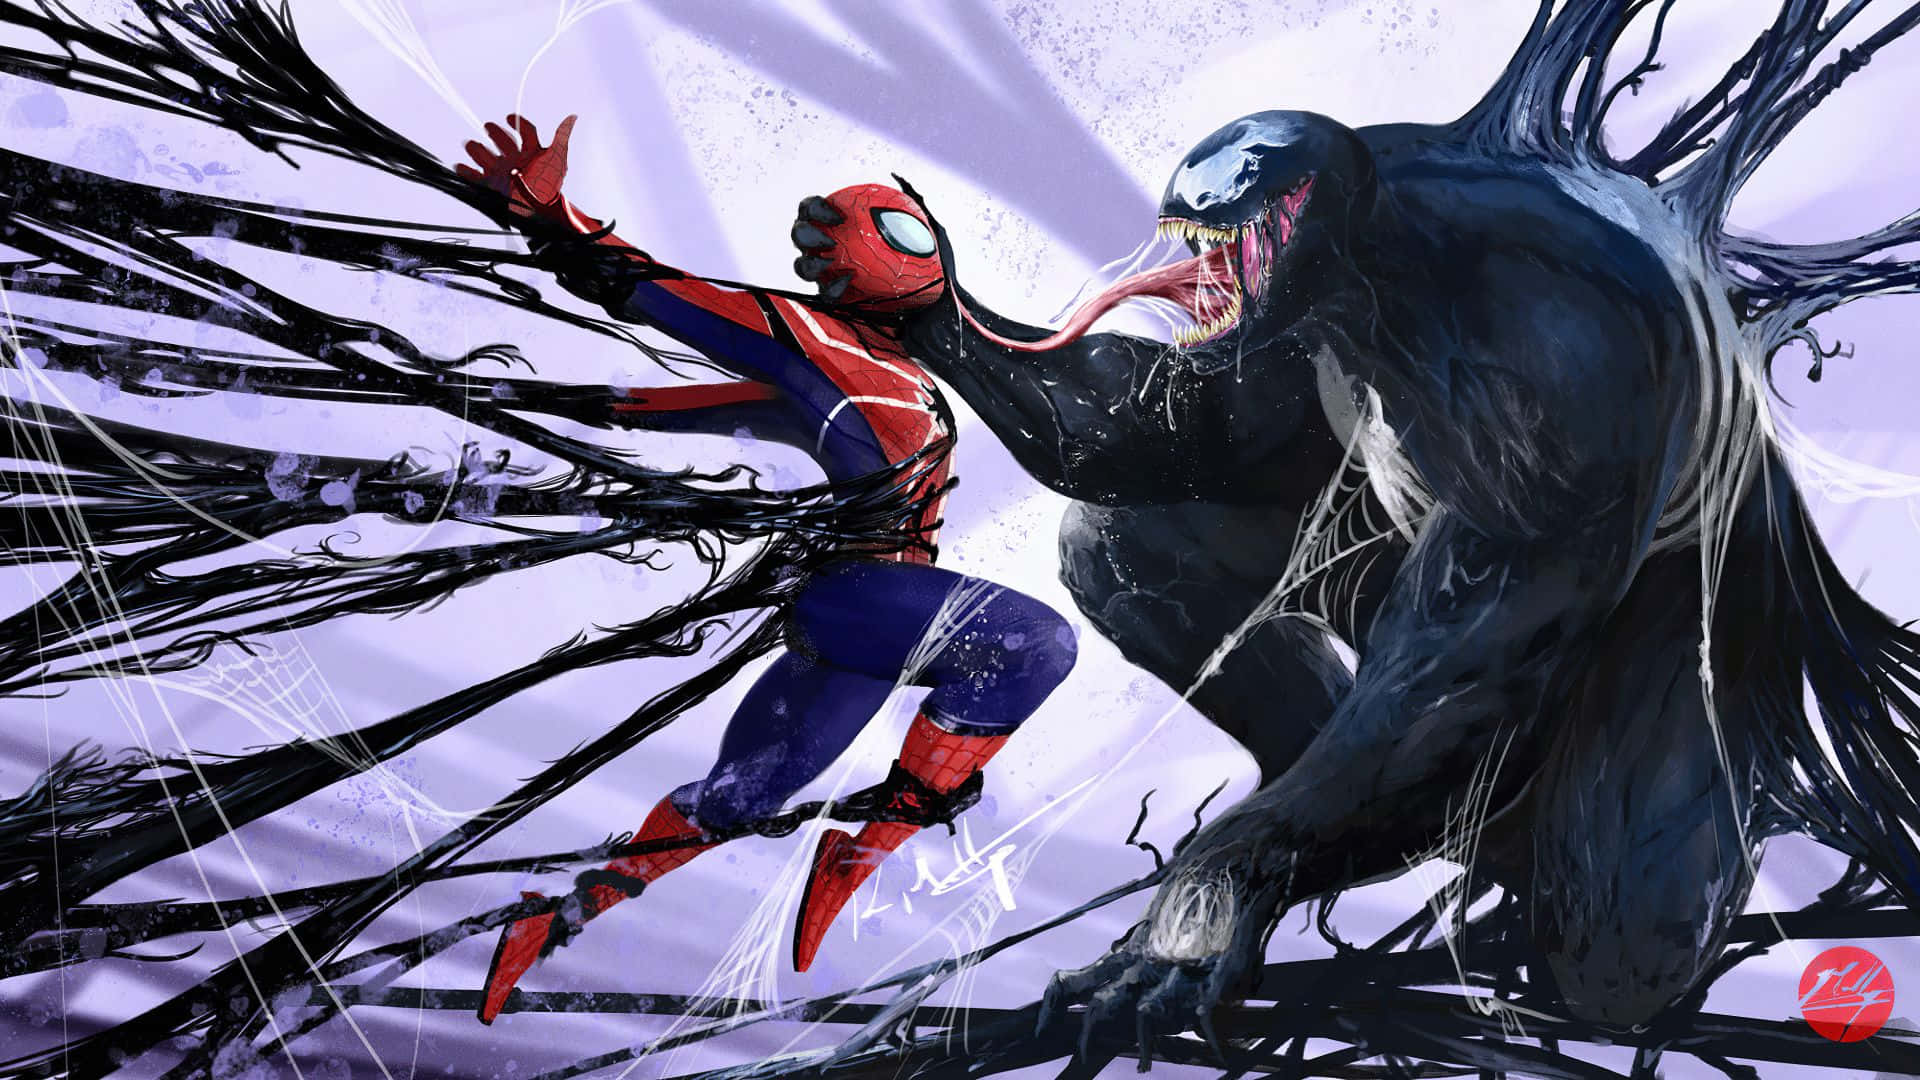 Homemaranha E Venom Lutando Na Teia De Aranha. Papel de Parede